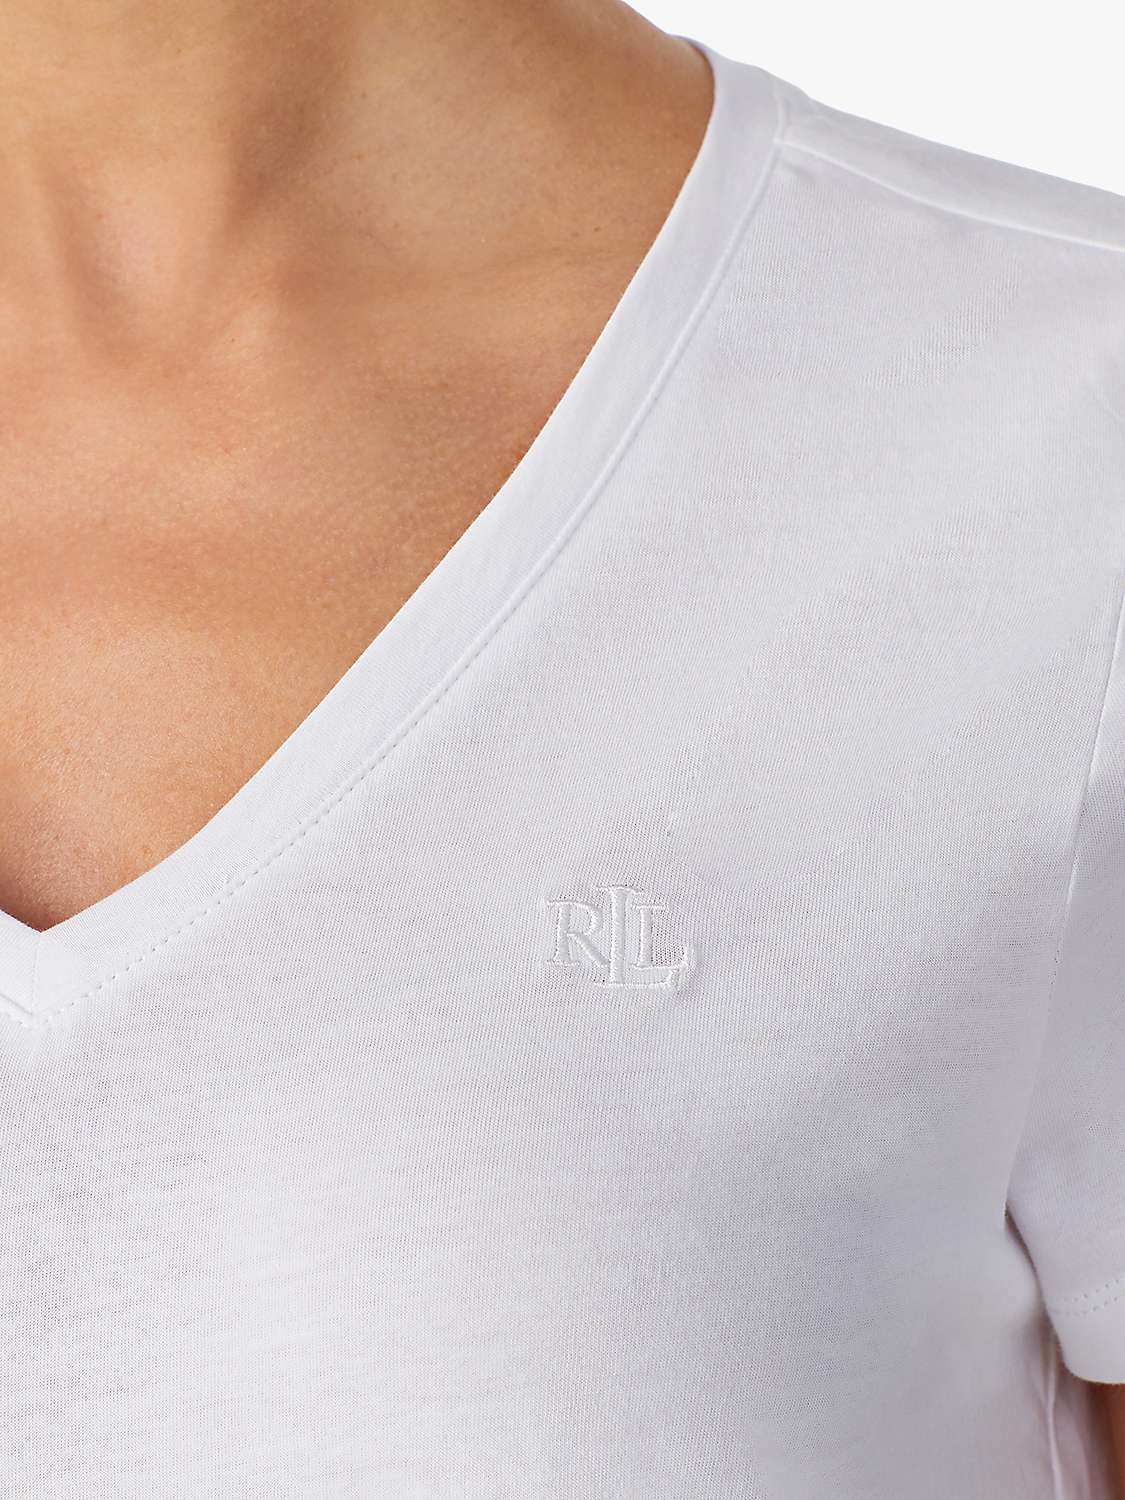 Buy Lauren Ralph Lauren V-Neck Sleep T-Shirt, White Online at johnlewis.com